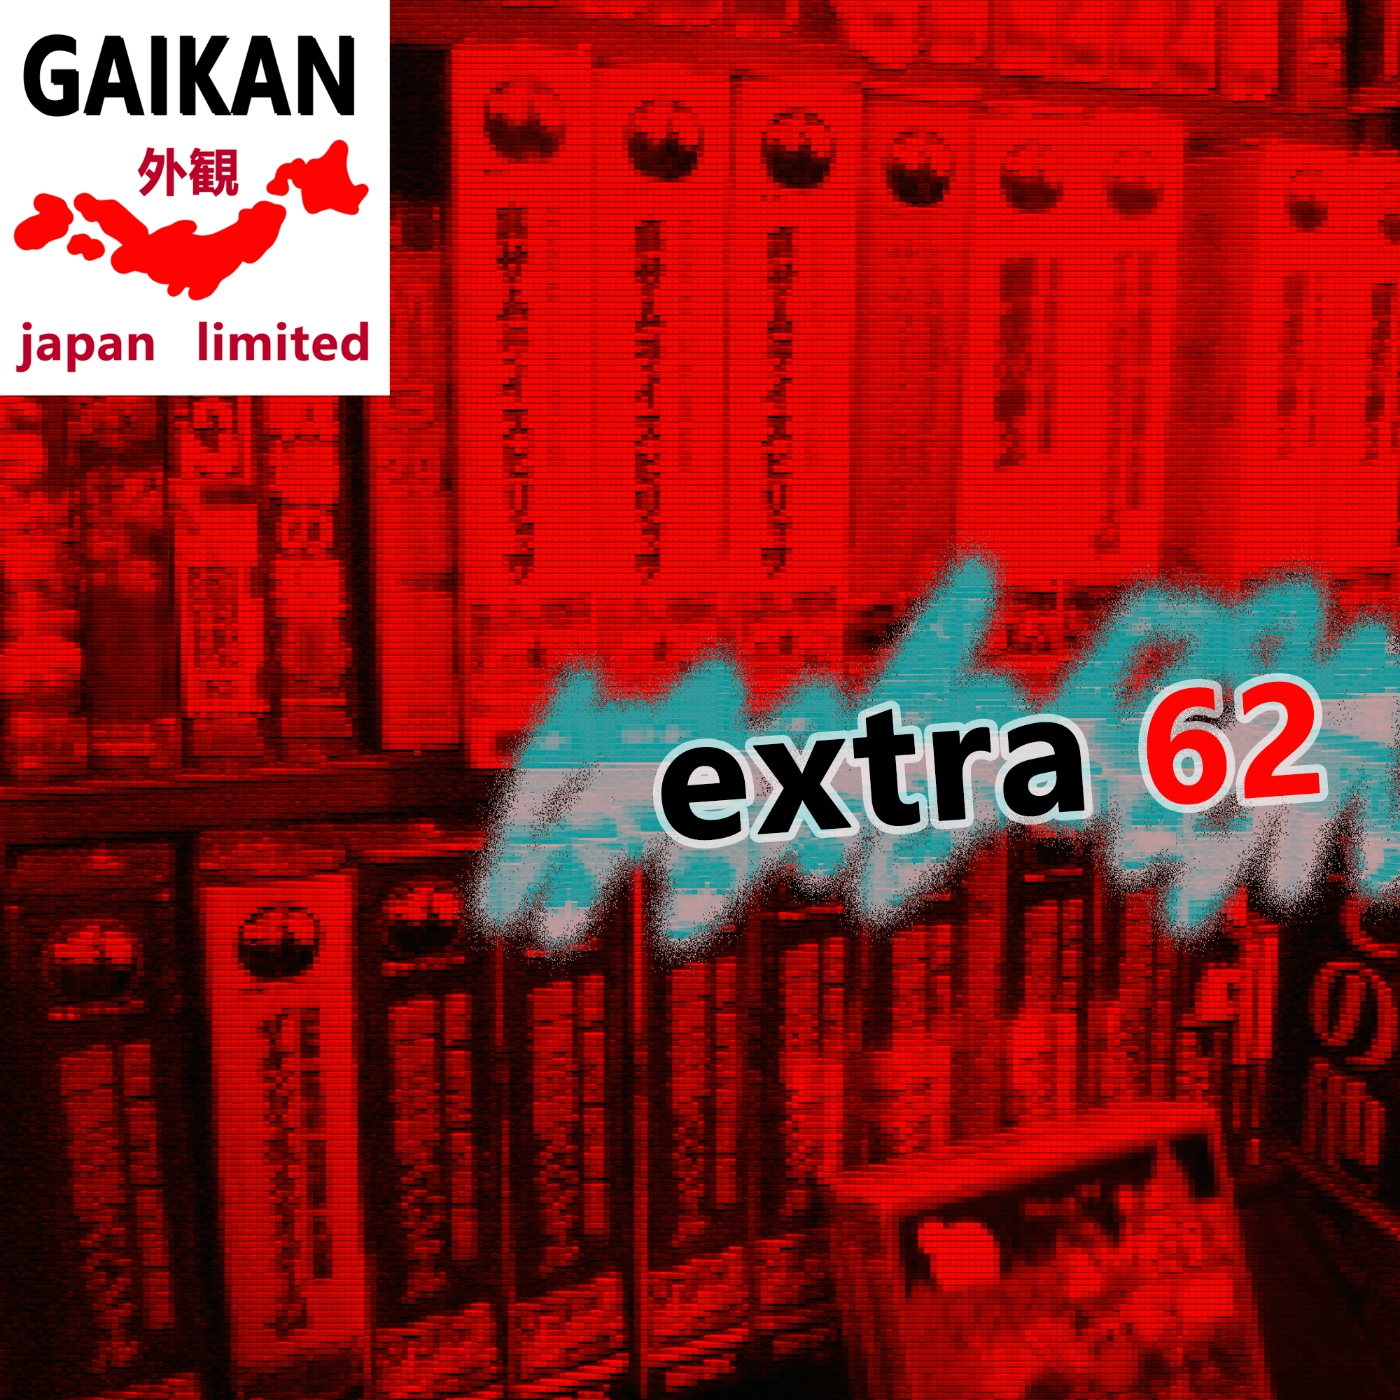 Extra 62 - Cómo y dónde comprar videojuegos retro en Japón? (parte 1) - Episodio exclusivo para mecenas